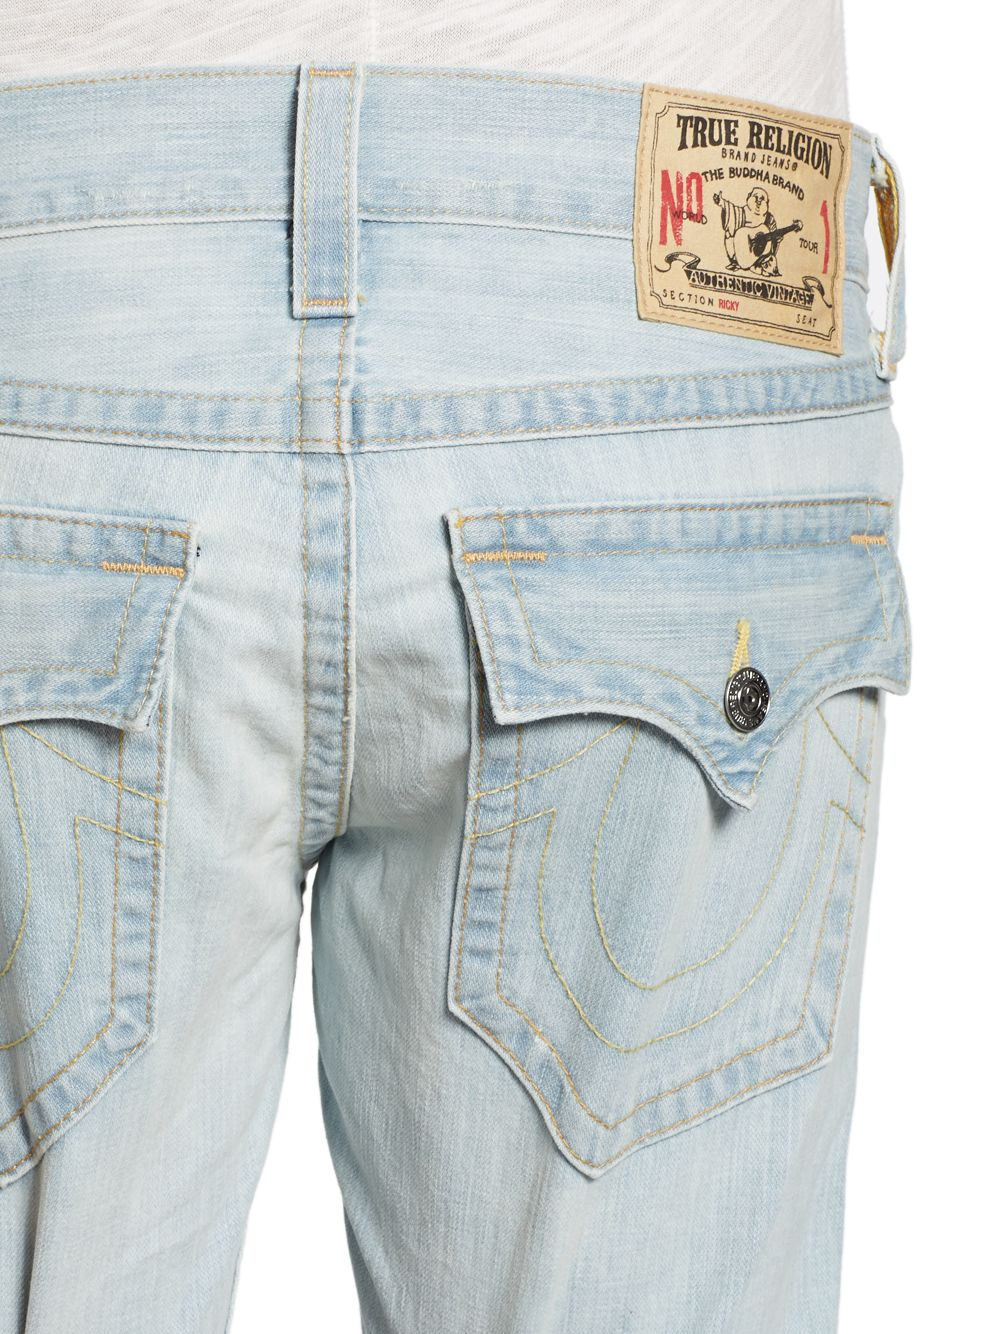 Buy True Religion Dark Blue Denim Jeans Online  541858  The Collective